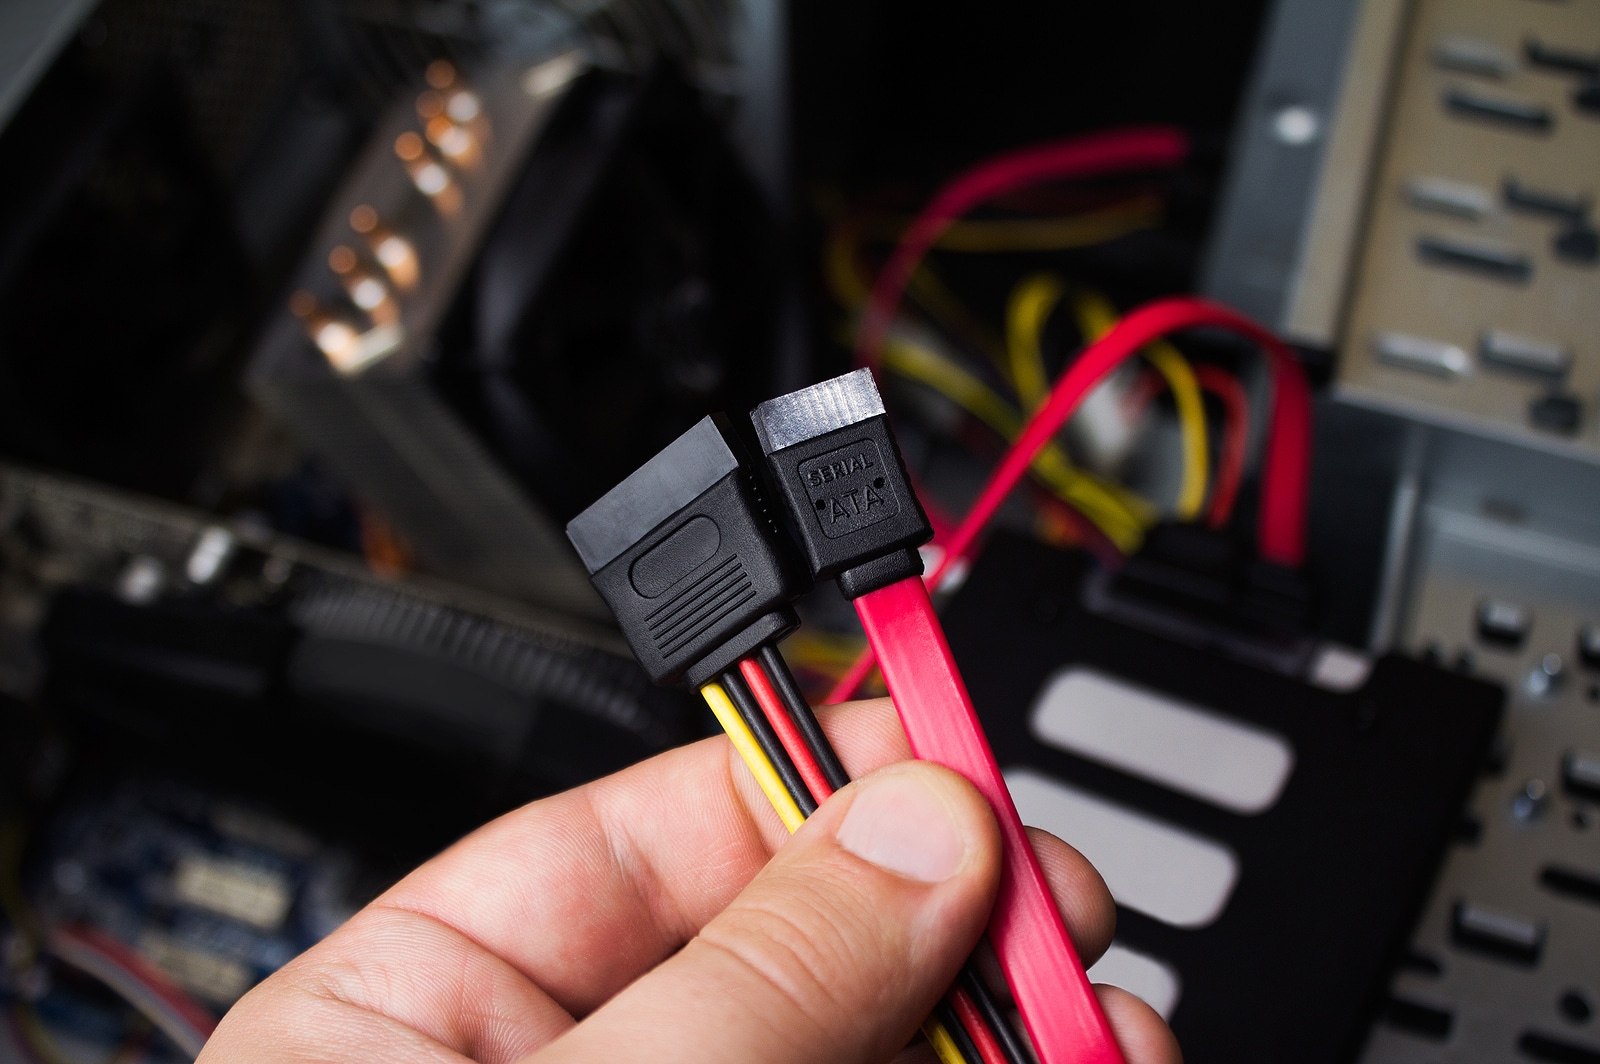 Überprüfen Sie die Kabelverbindungen der SSD auf festen Sitz und eventuelle Beschädigungen.
Entfernen Sie den aktuellen SSD-Treiber und installieren Sie ihn erneut. Stellen Sie sicher, dass Sie den richtigen Treiber für Ihre SSD verwenden.